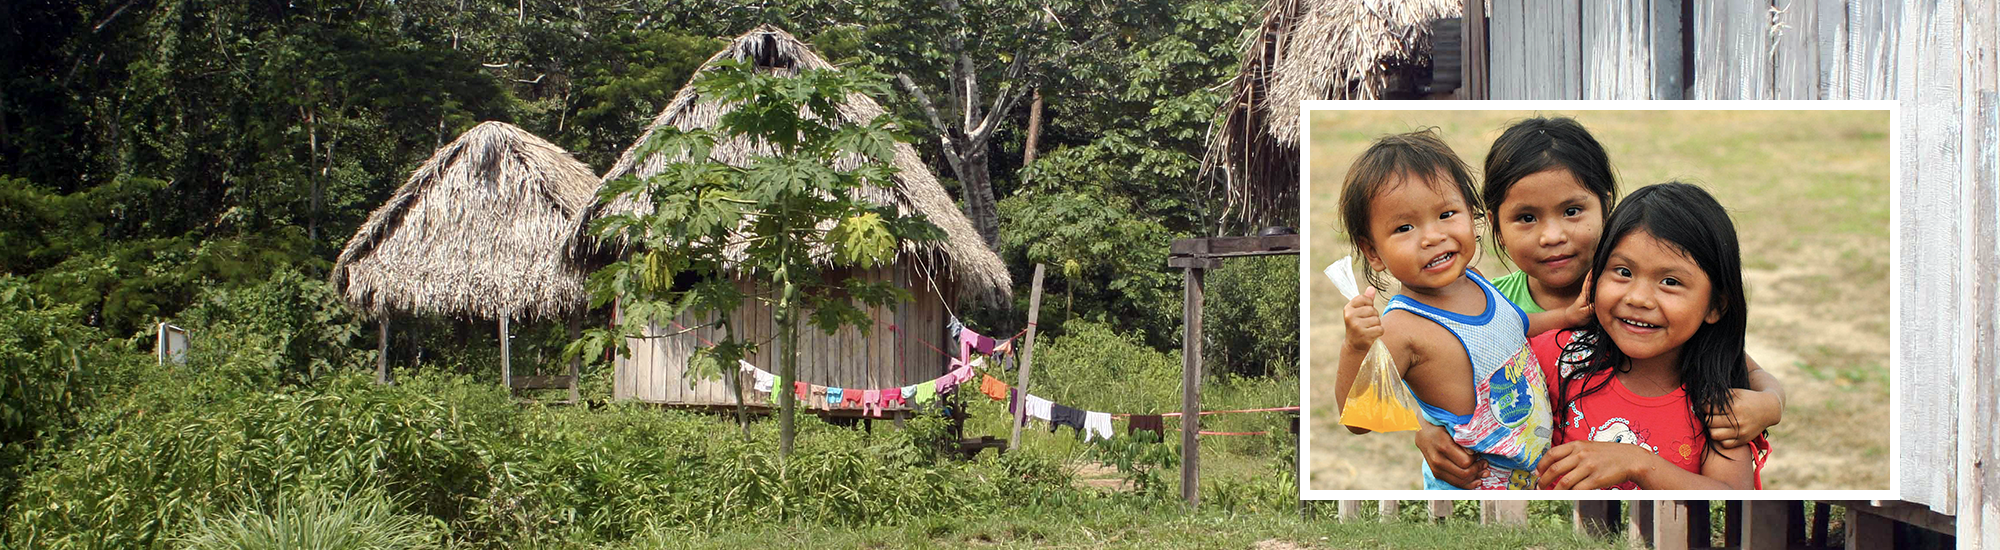 Ein großes Bild von einer Hütte im Regenwald, ein kleines Bild in dem Großen Bild, welches Kinder zeigt. 